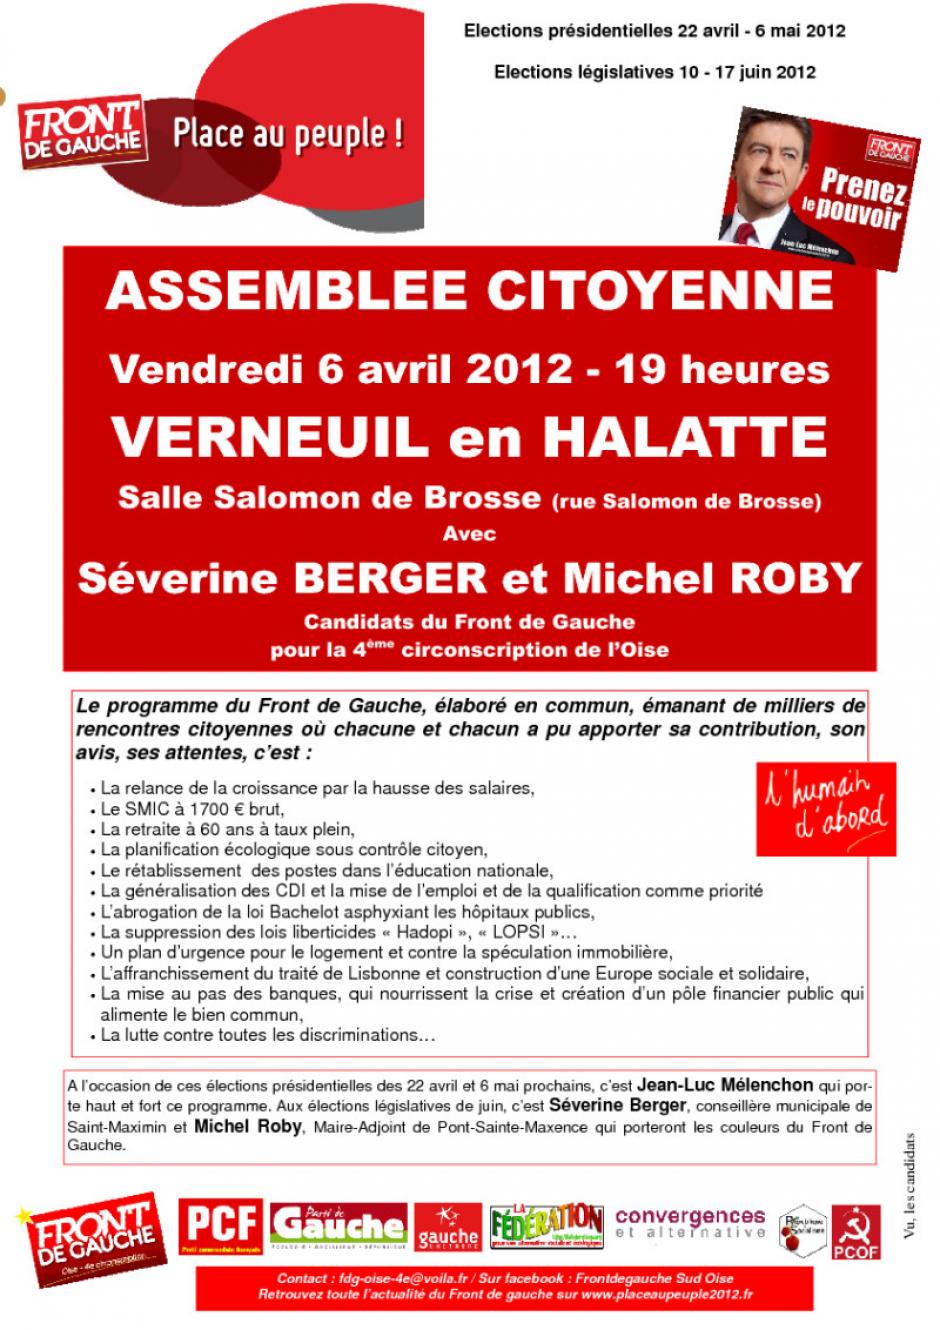 6 avril, Verneuil-en-Halatte - Assemblée citoyenne du Front de gauche - Affiche